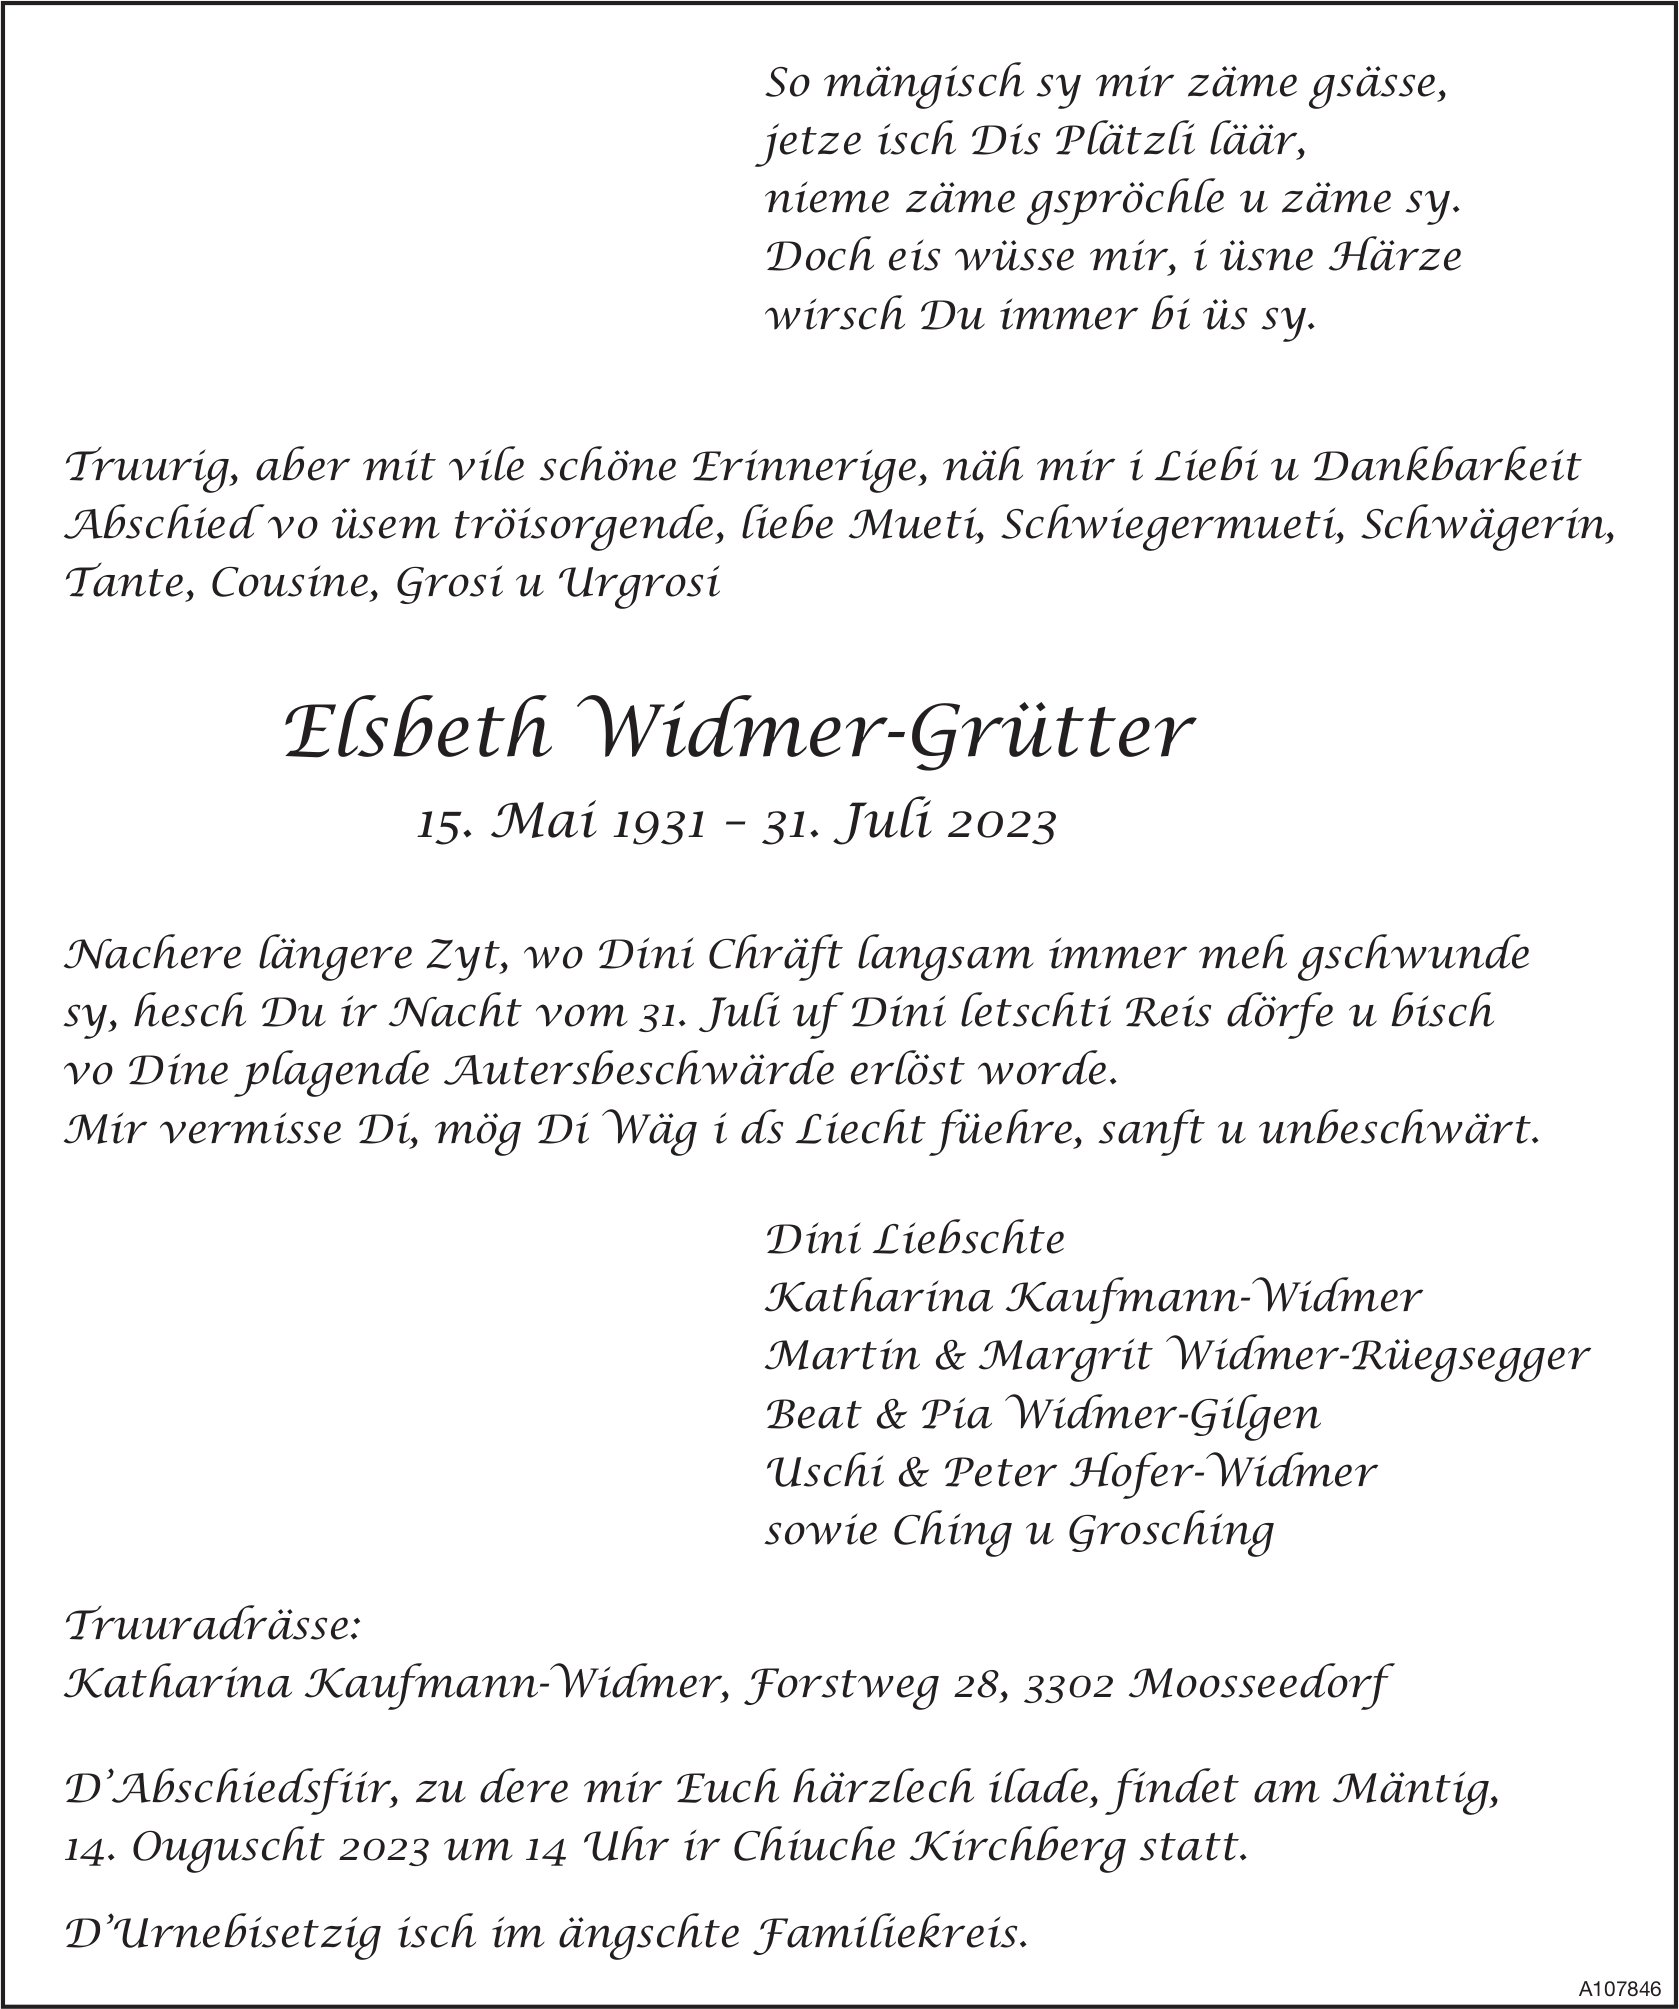 Elsbeth Widmer-Grütter, Juli 2023 / TA